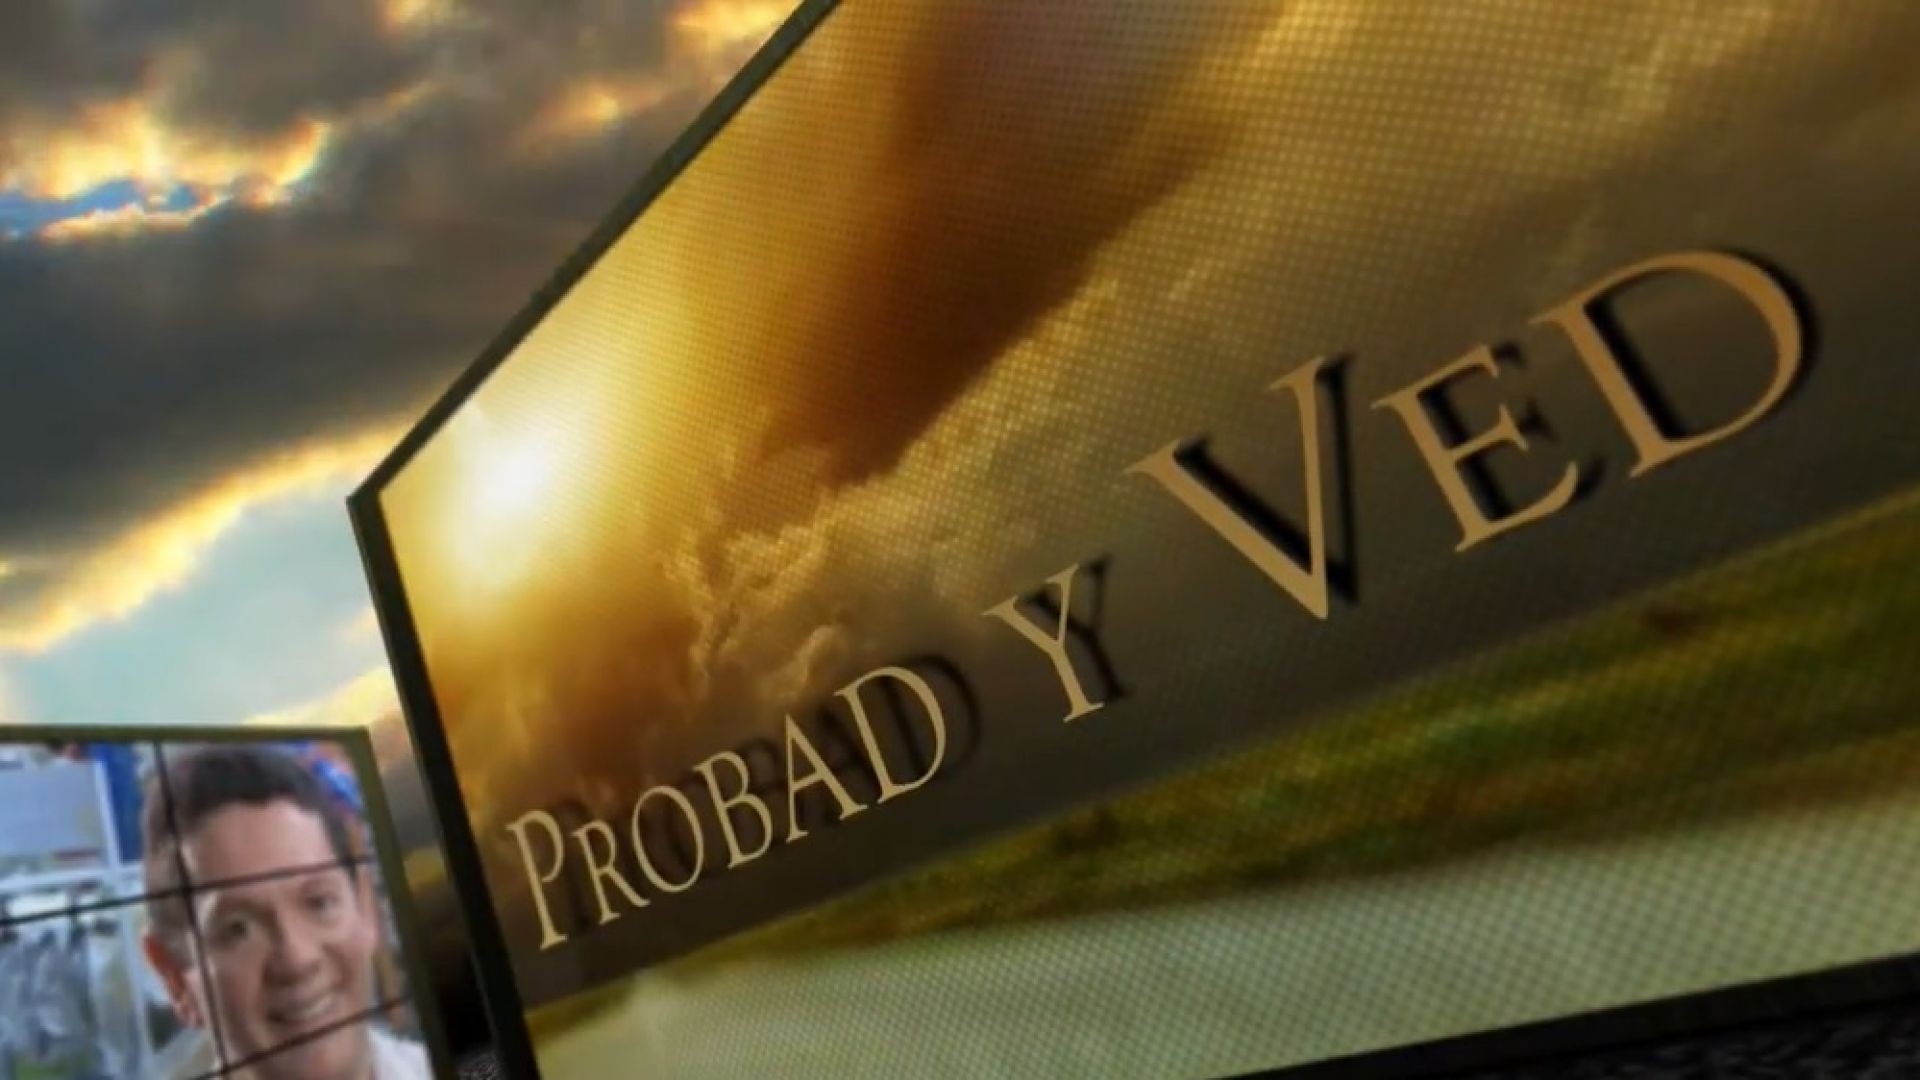 Probad y Ved 2013 - Todo es possible - 13/Jul